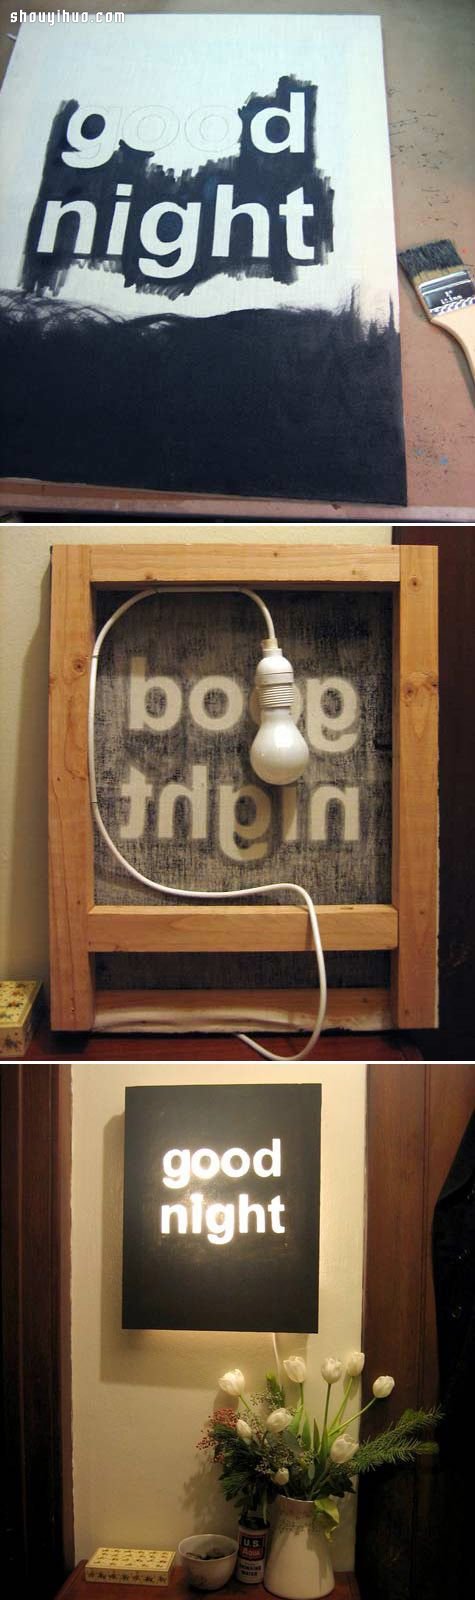 个性带文字照明灯具灯罩简单手工DIY制作